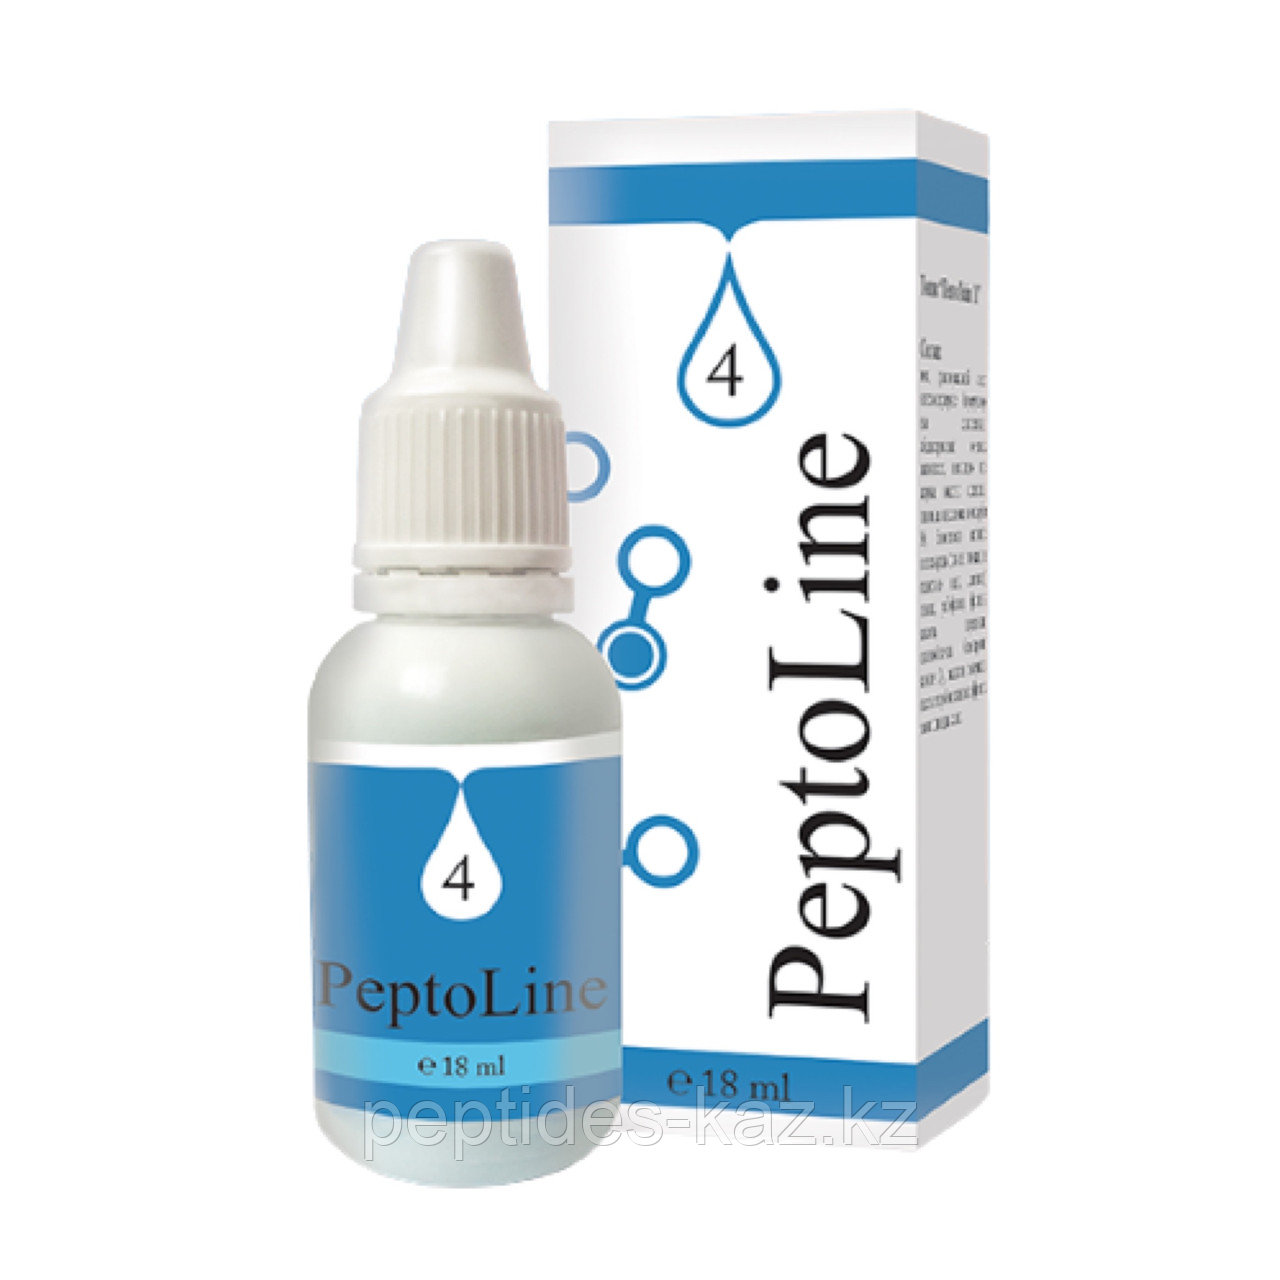 PeptoLine 4 для печени, пептидный комплекс 18 мл